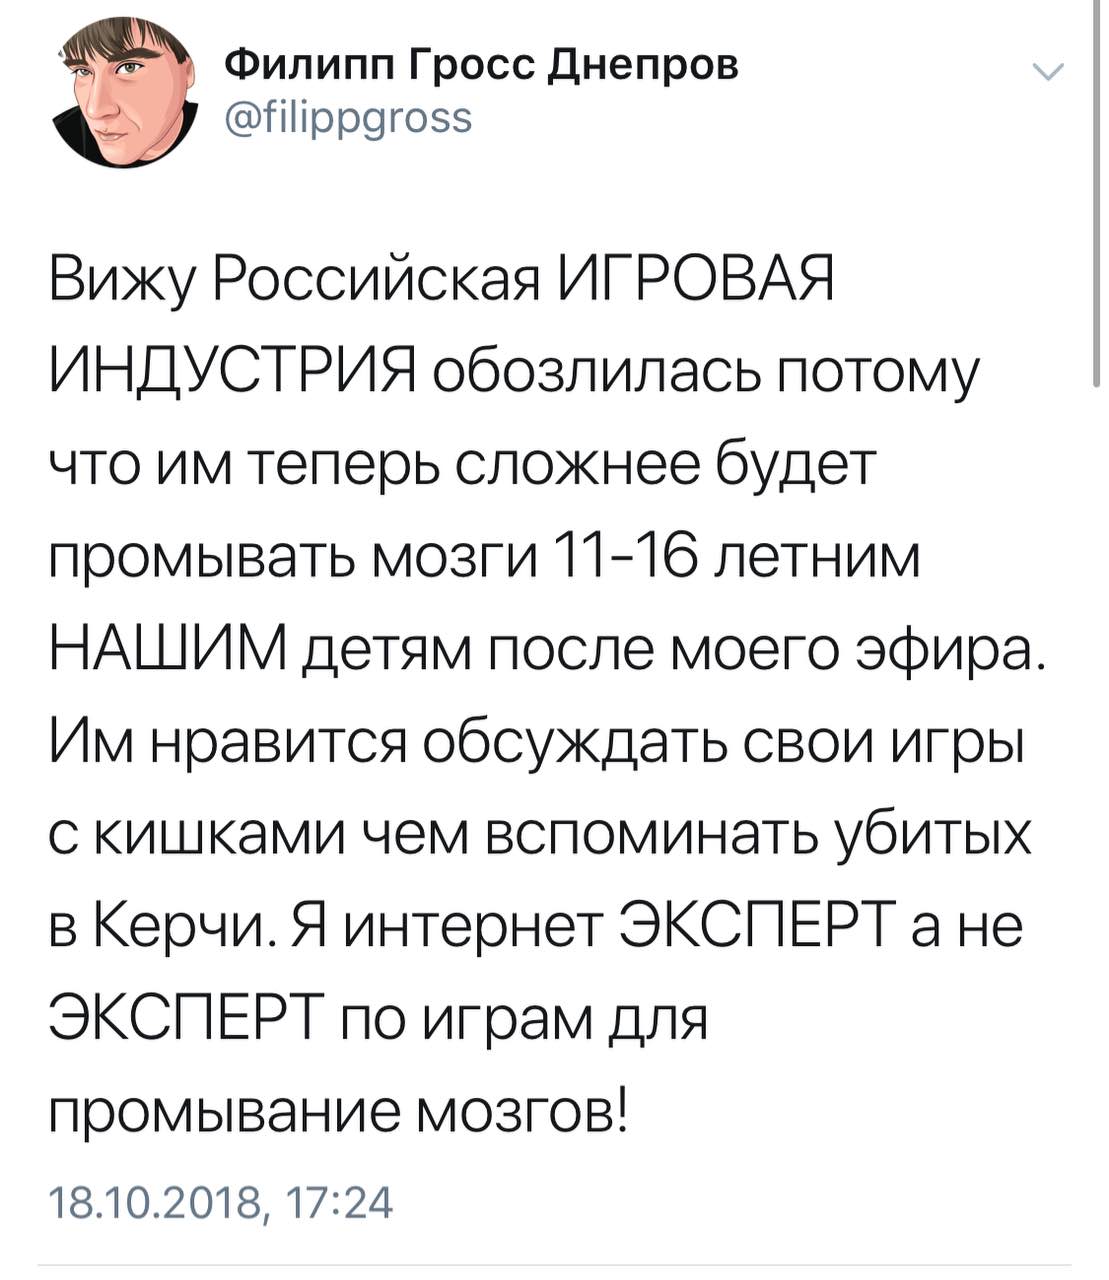 Филипп Гросс Днепров Дока 2